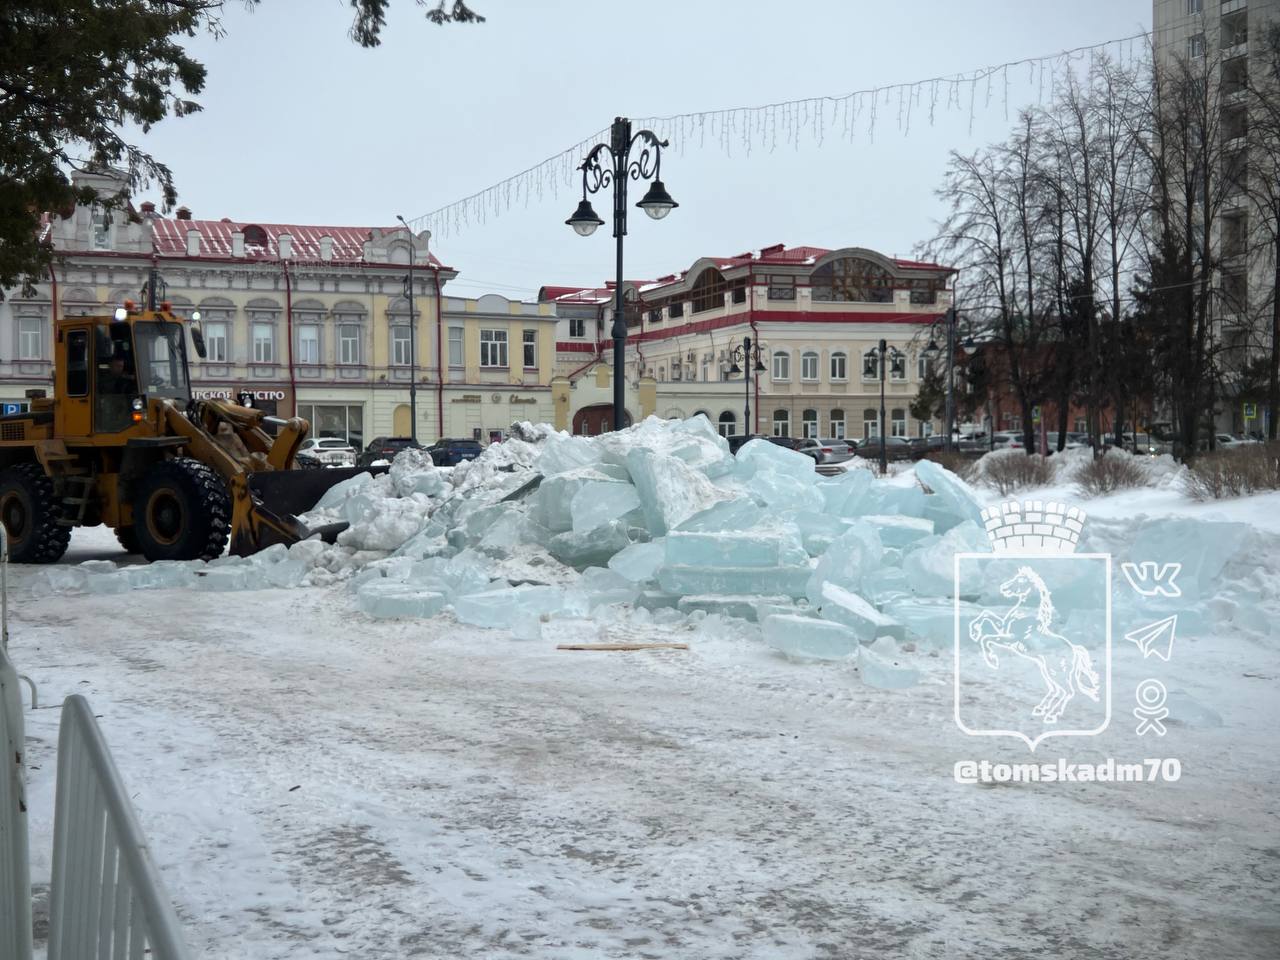 Новый год ❄, Томские новости, убирают лед демонтаж интересные новости Томска скульптуры В Томске убирают лед после демонтажа скульптур на Ново-Соборной